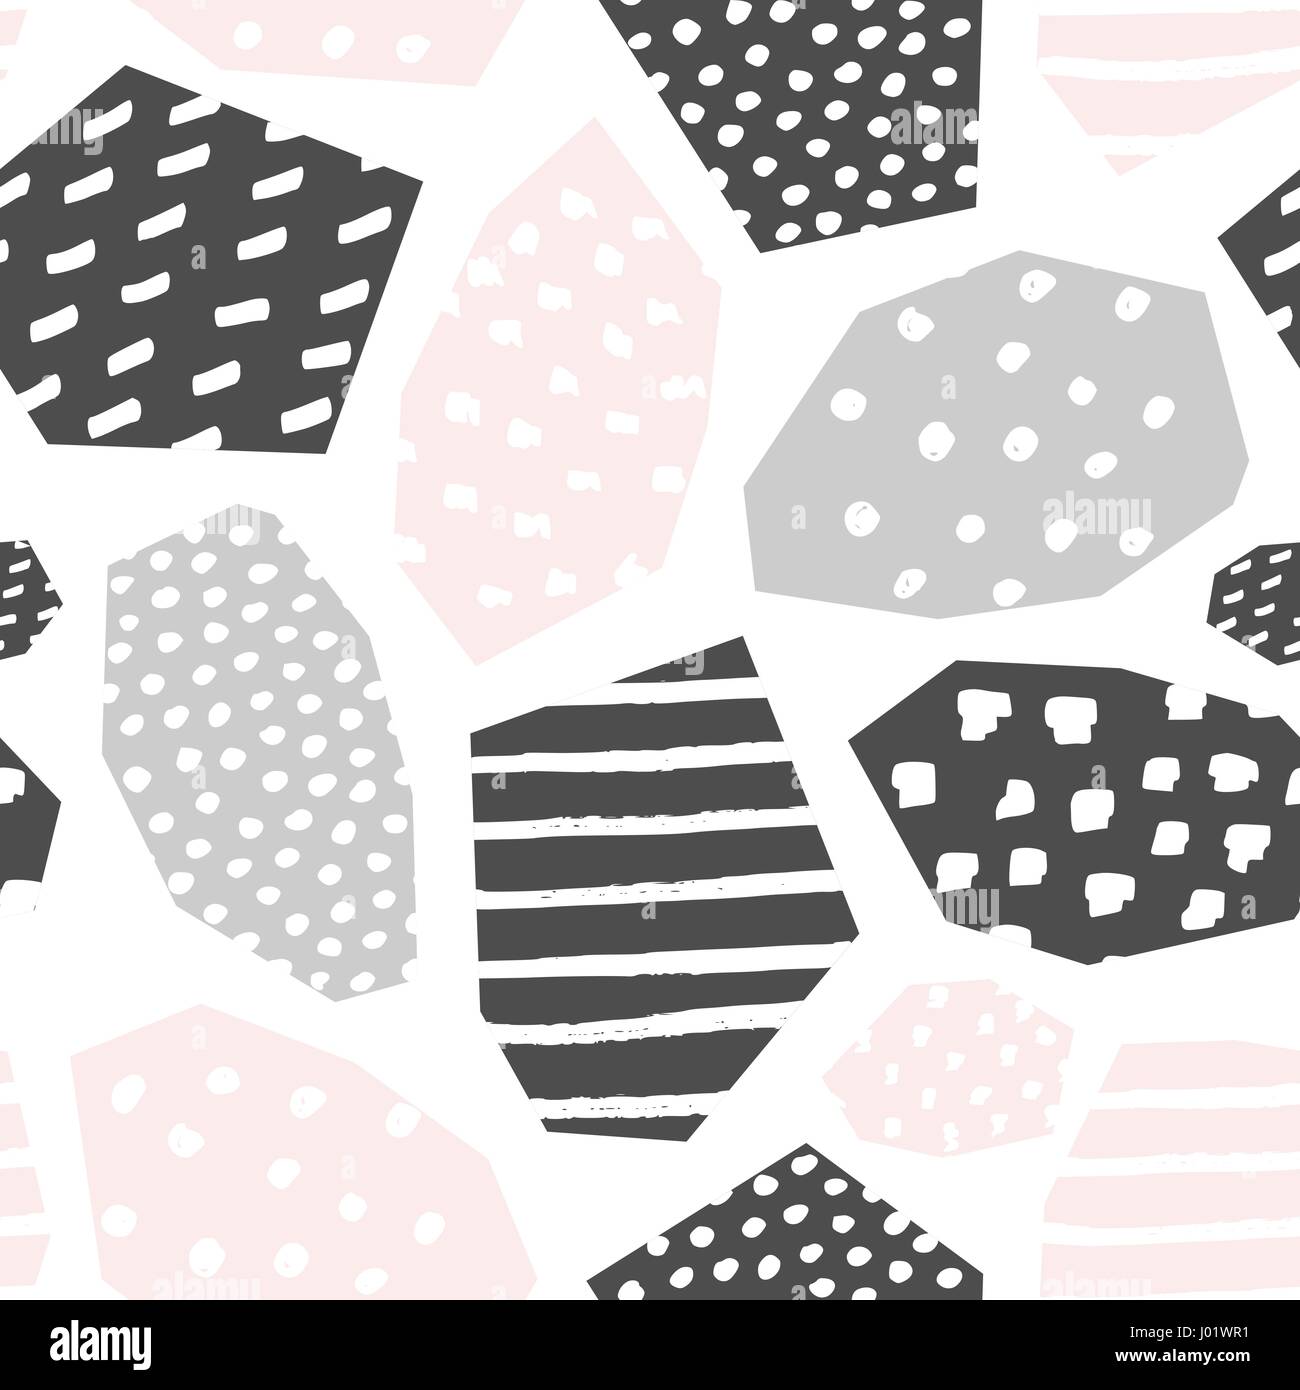 Nahtlose Muster mit strukturierten geometrischen Formen in erröten rosa, grau und weiß. Abstrakter Stil Textil, Geschenkpapier, Wand-Kunst-Design. Stock Vektor